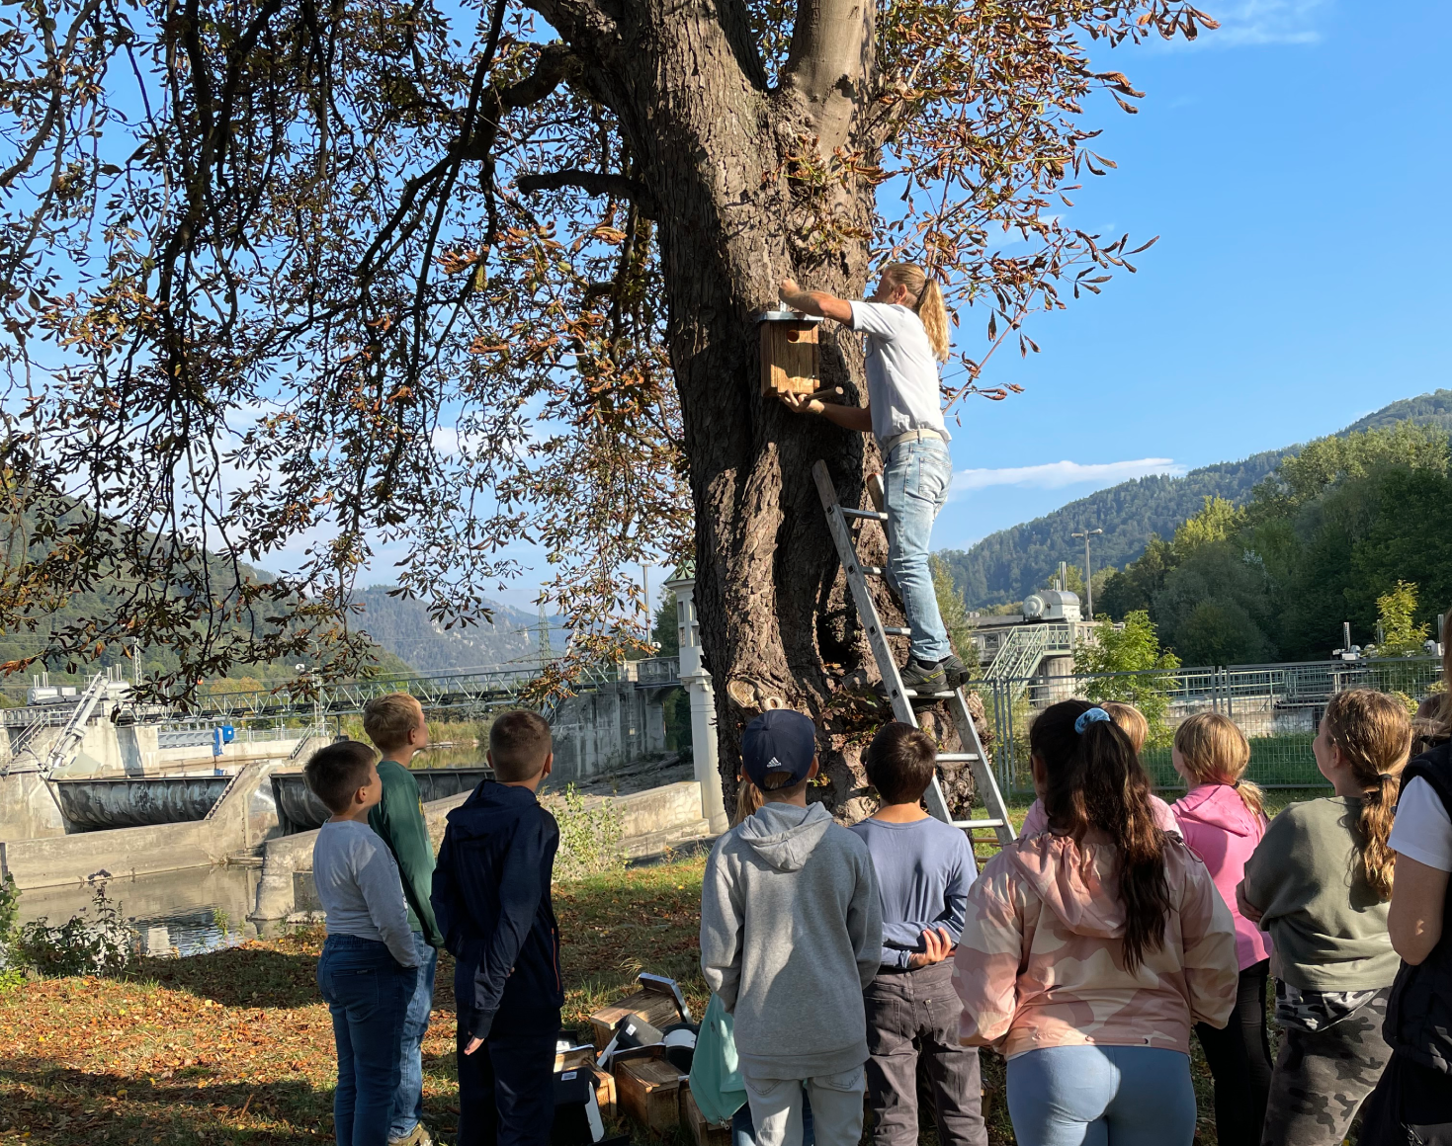 Schulkinder beobachten, wie ein Nistkasten für Vögel und Fledermäuse am Baum während einer Umweltschutzaktion im Rahmen des Baus des Kraftwerk Gratkorn installiert wird, um lokale Tierarten zu unterstützen.